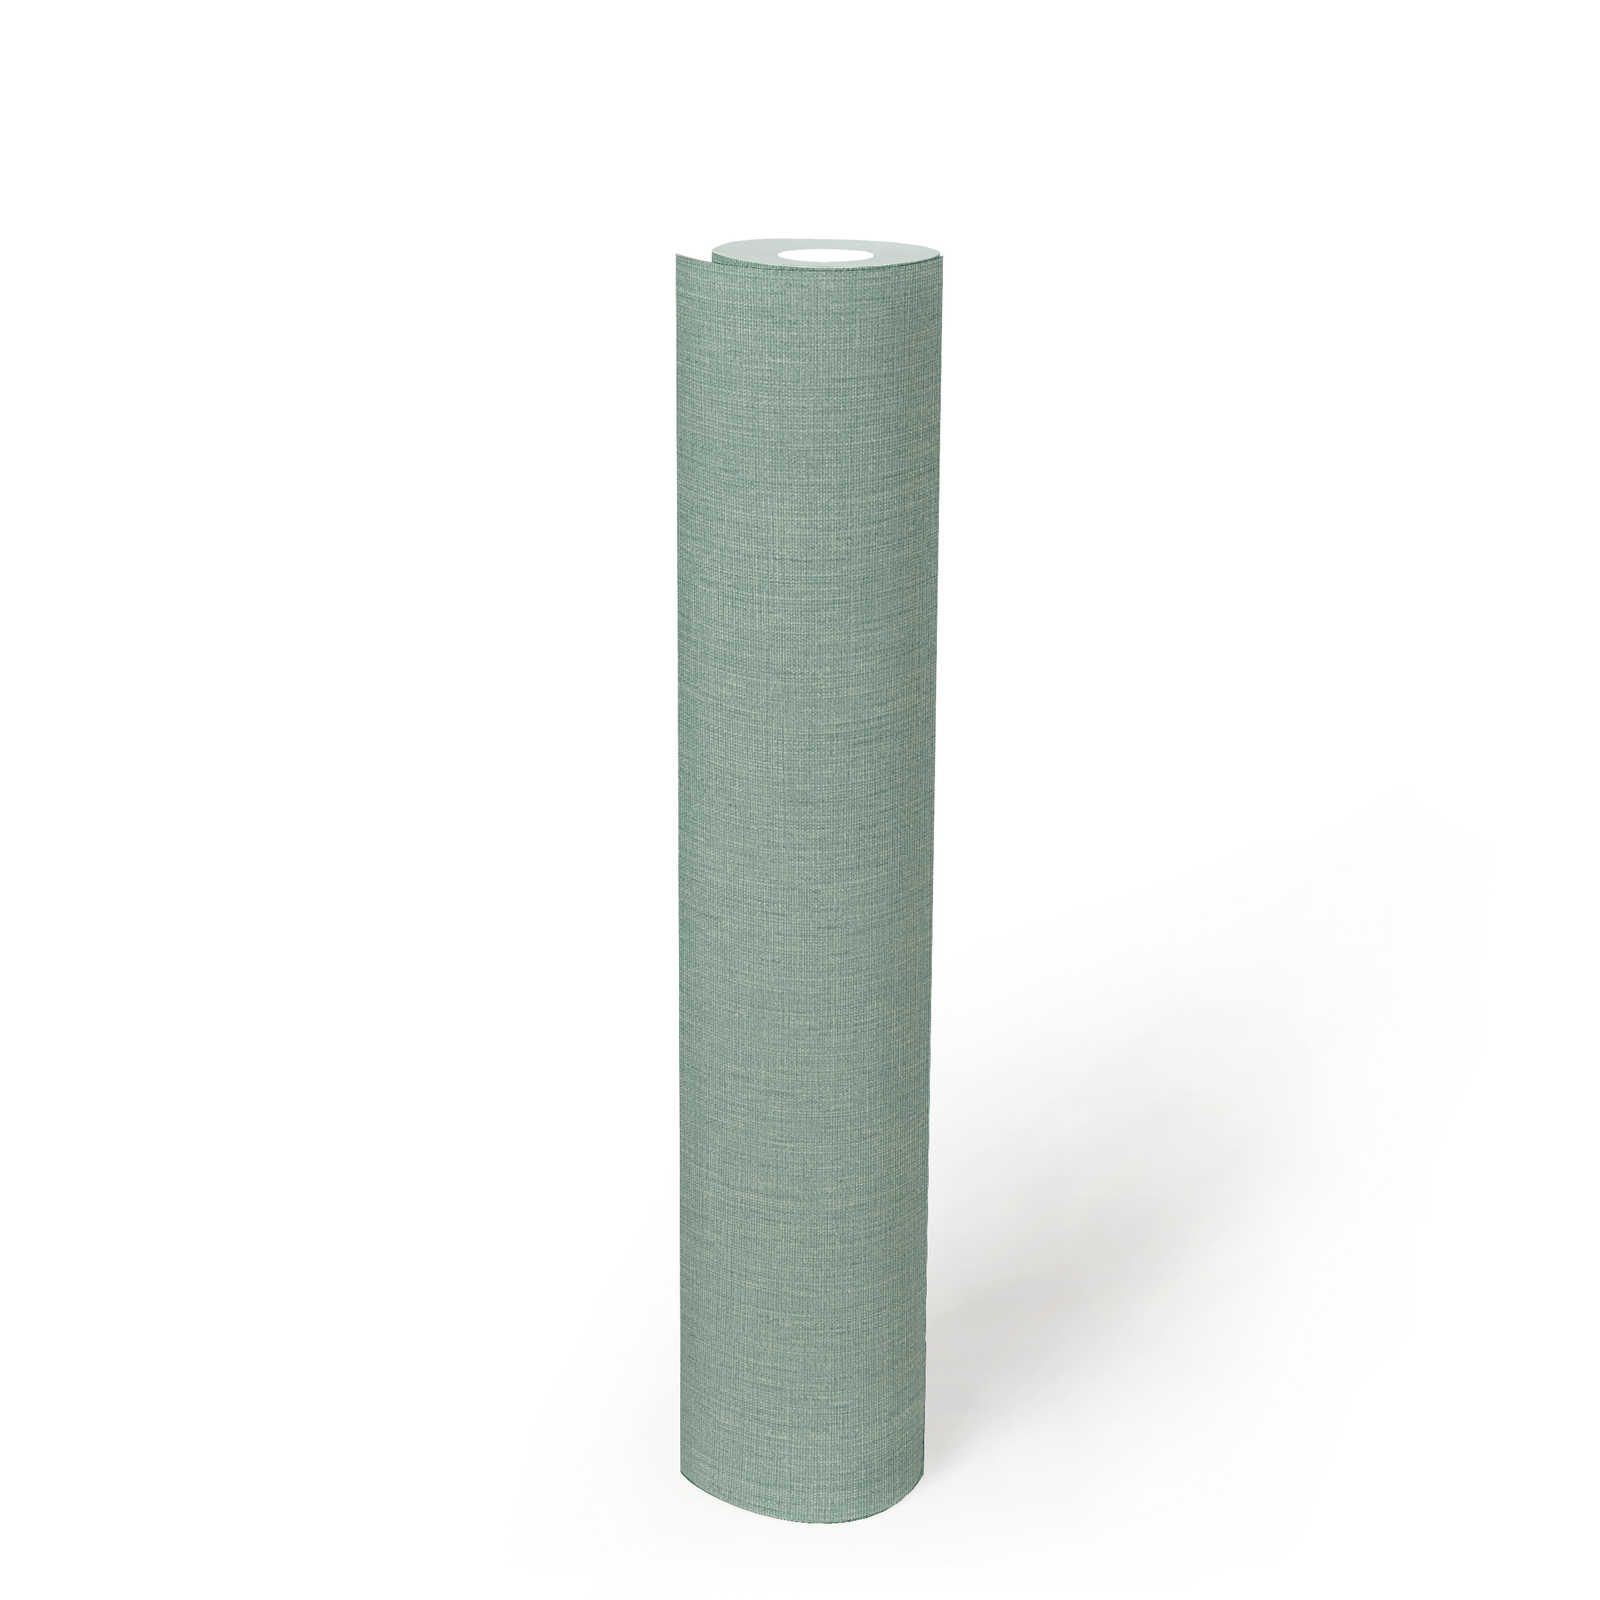             papier peint en papier uni aspect textile - vert, turquoise, bleu
        